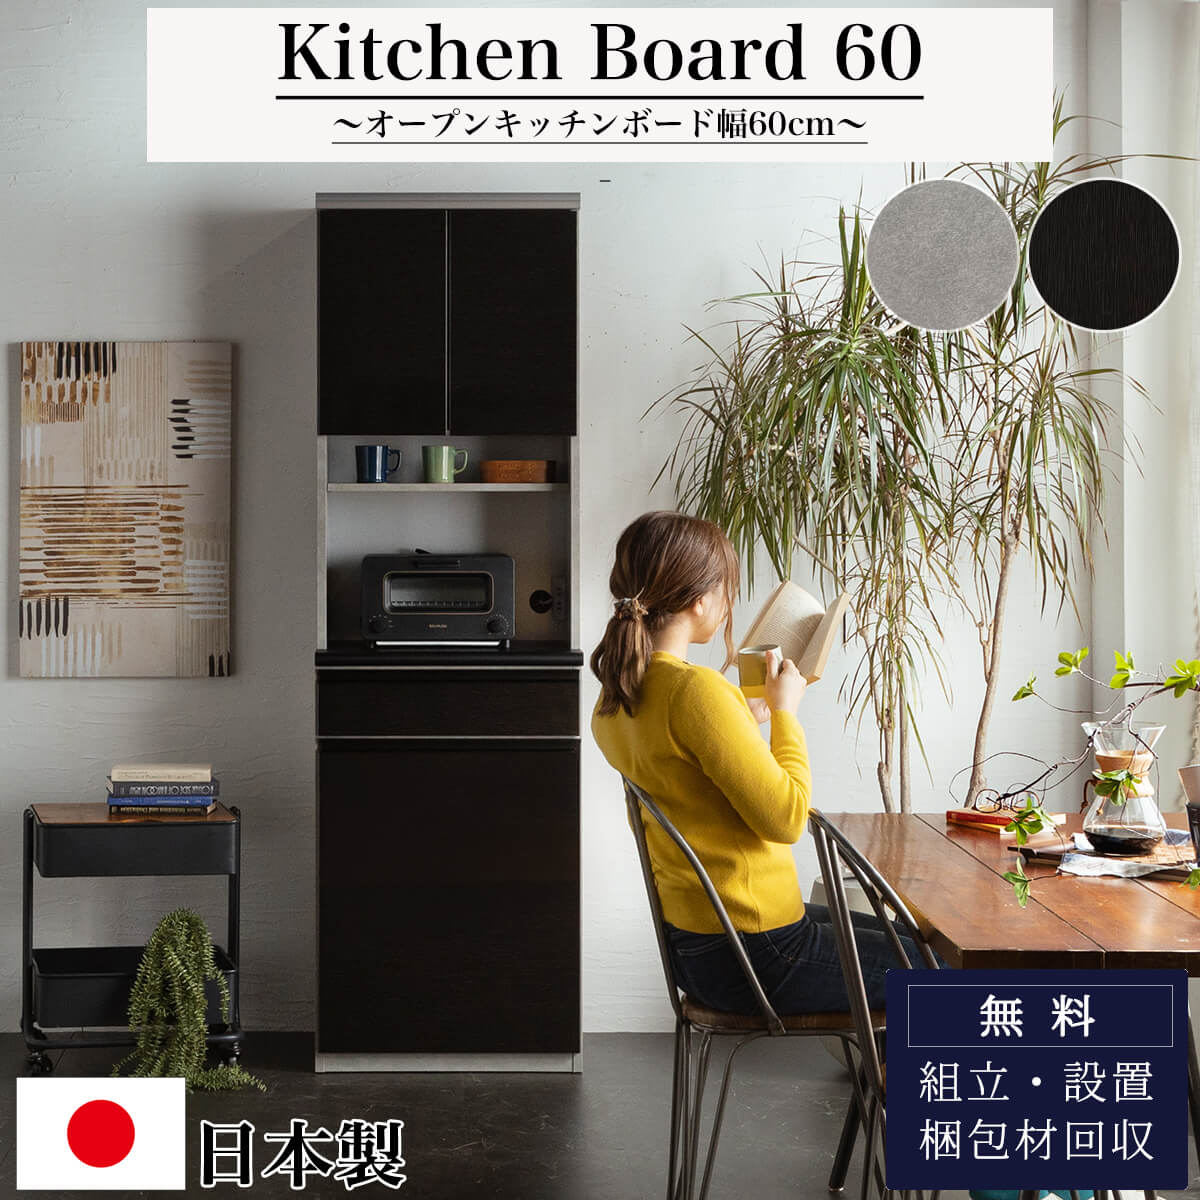 F00714_キッチンカウンター 食器棚 60幅 おしゃれ おすすめ 完成品 日本製 オープンボード 収納棚 レンジ台 ロータイプ 引き出し  コンセント付き 隙間収納 丁度いい